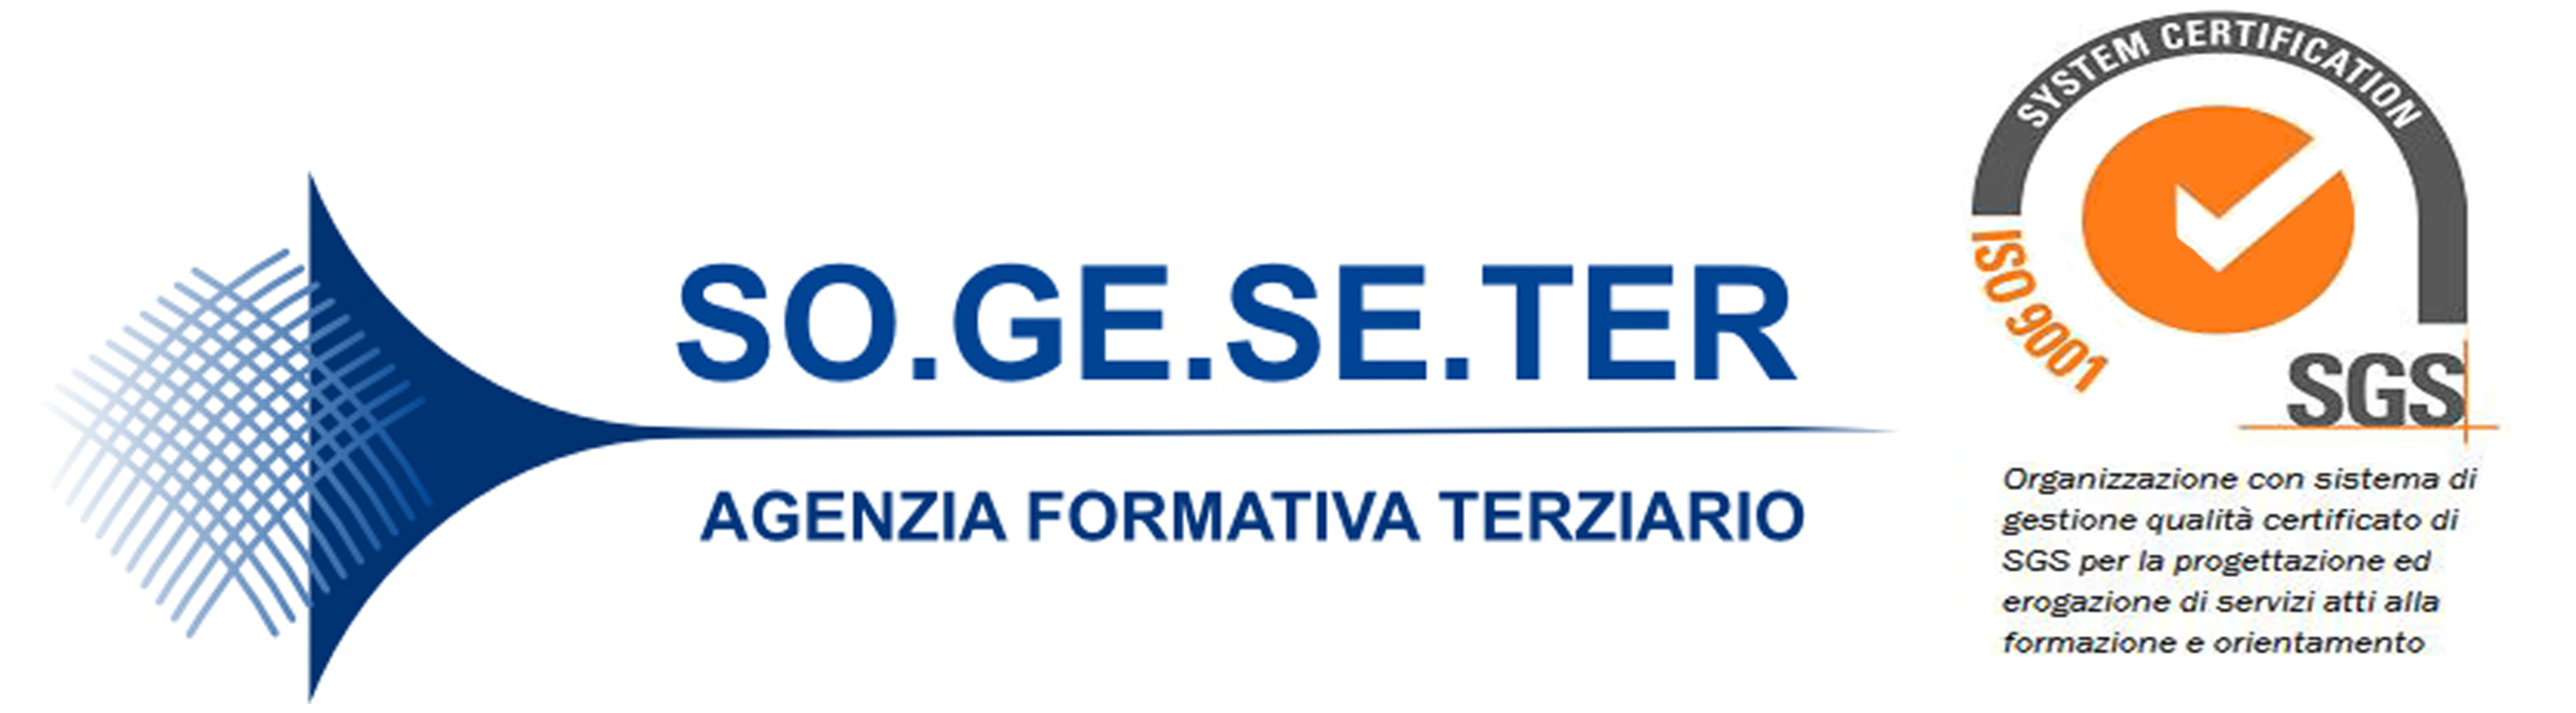 SOGESETER - Agenzia formativa di Confcommercio Lucca e Massa Carrara